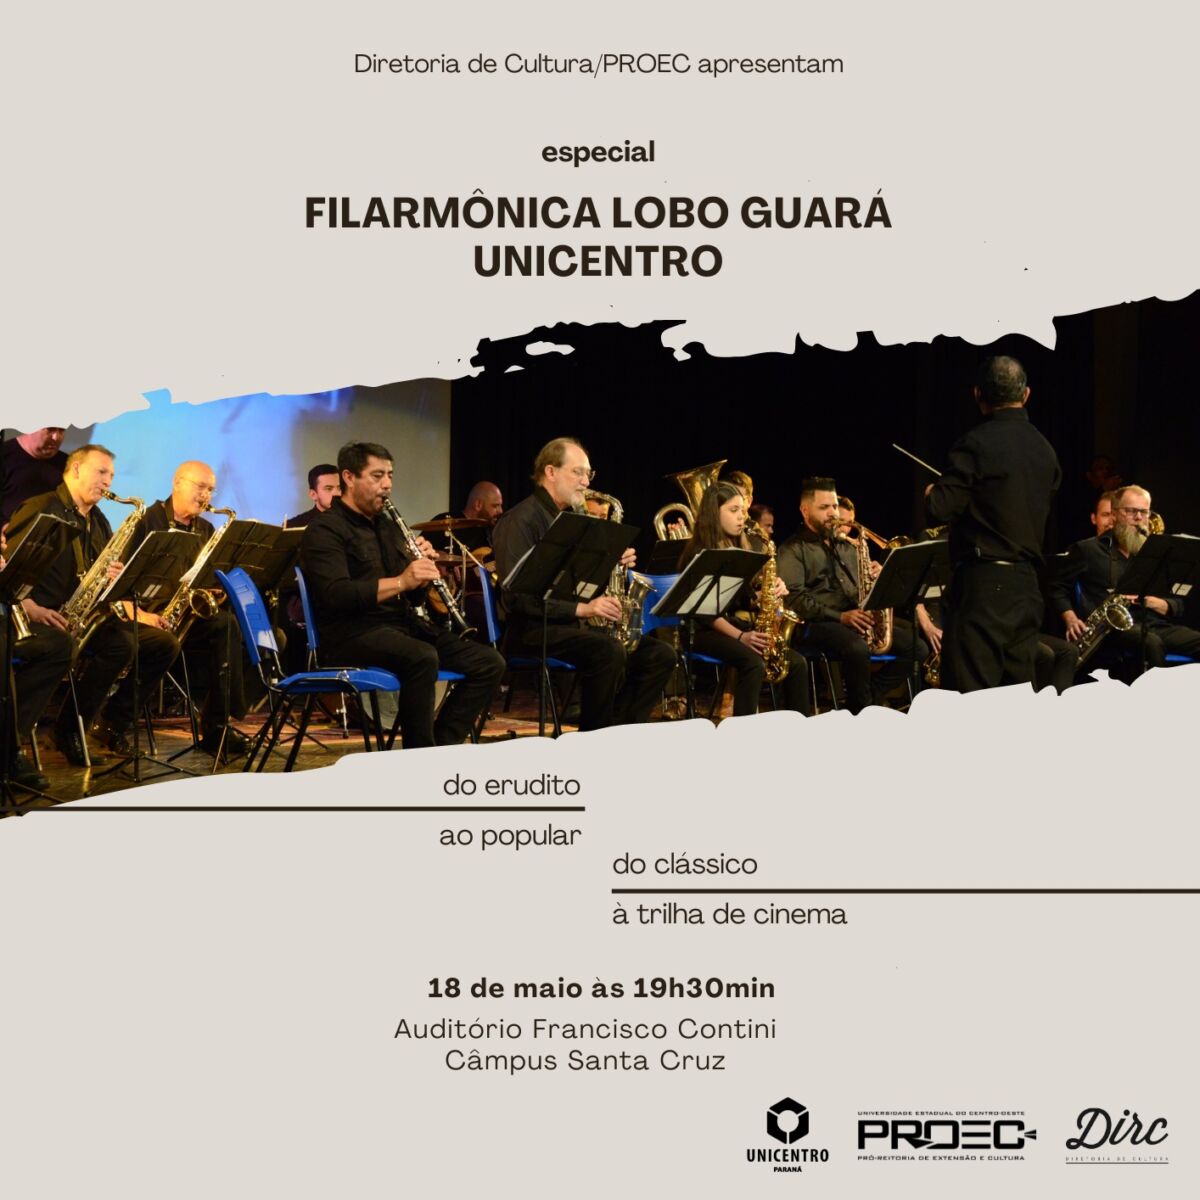 Apresentação especial da Filarmônica Lobo Guará/Unicentro